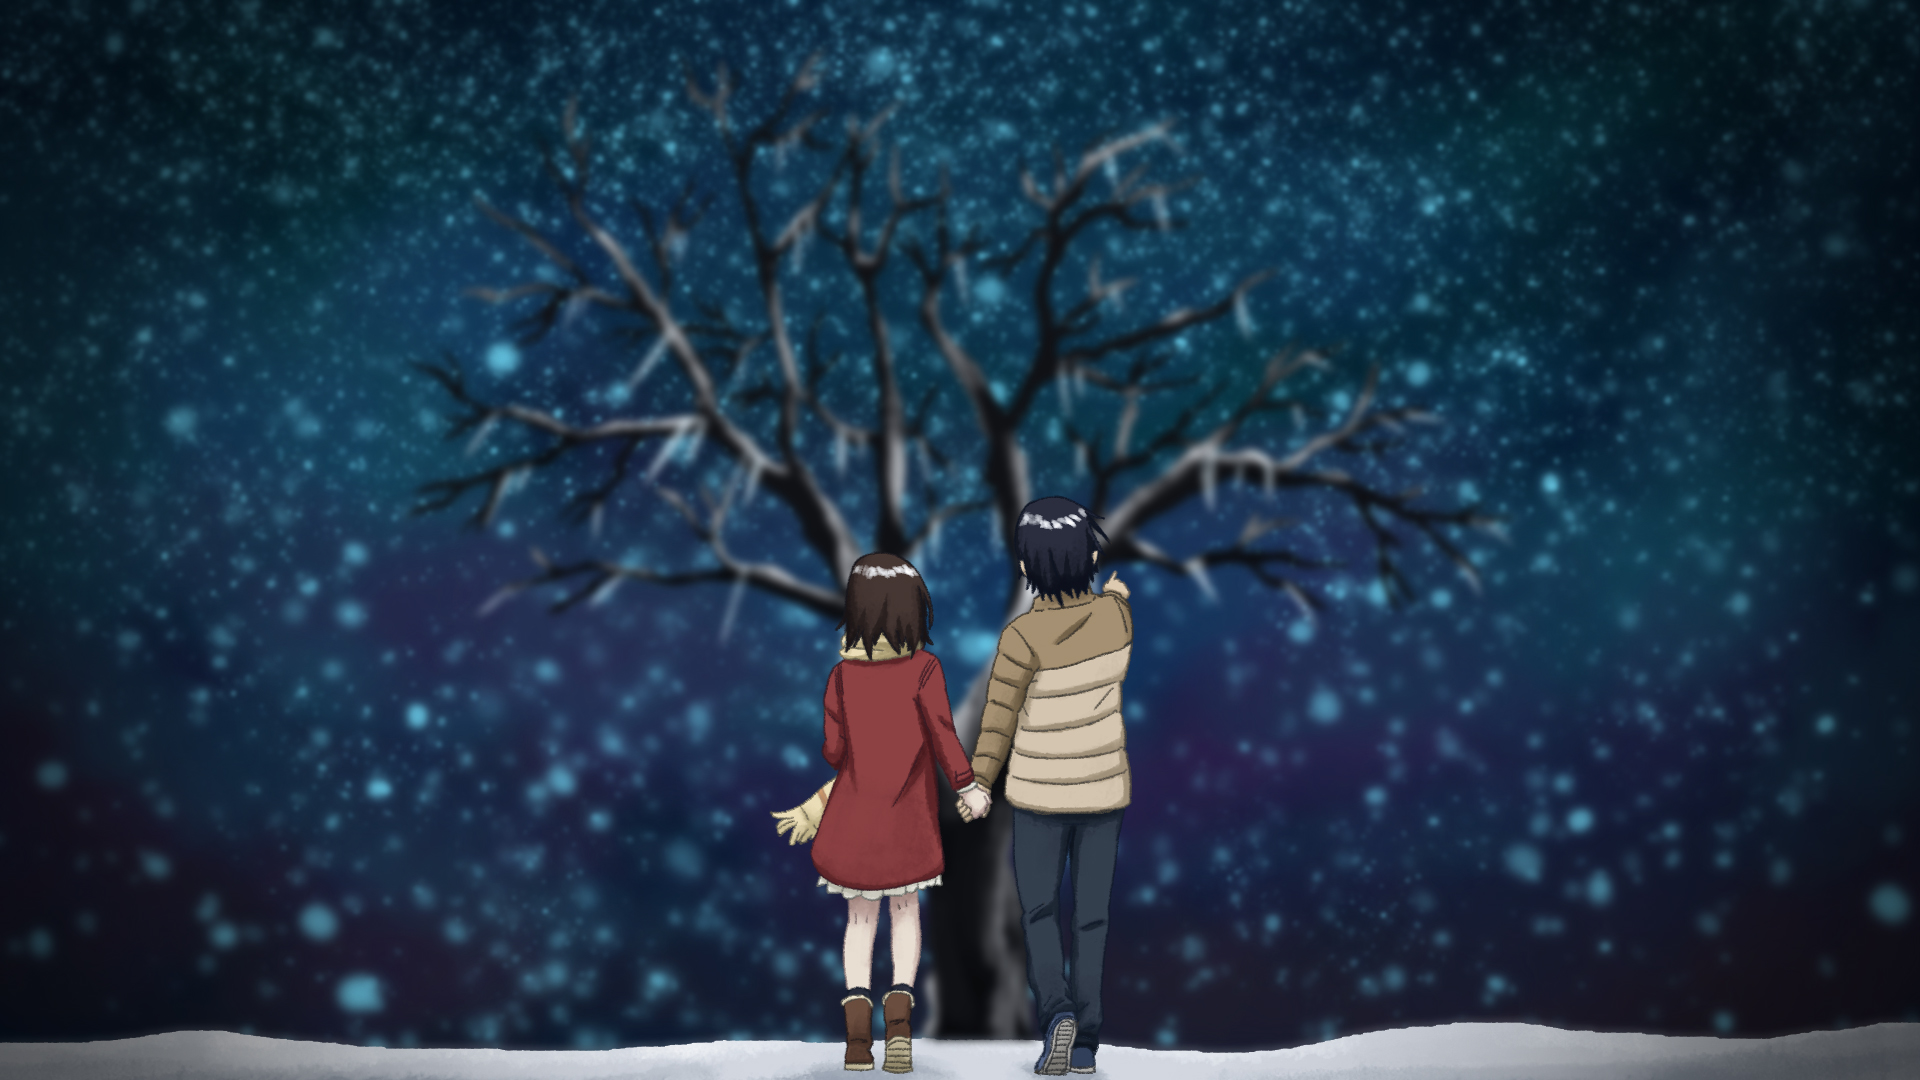 지워진 애니메이션 벽지,눈,겨울,하늘,나무,밤